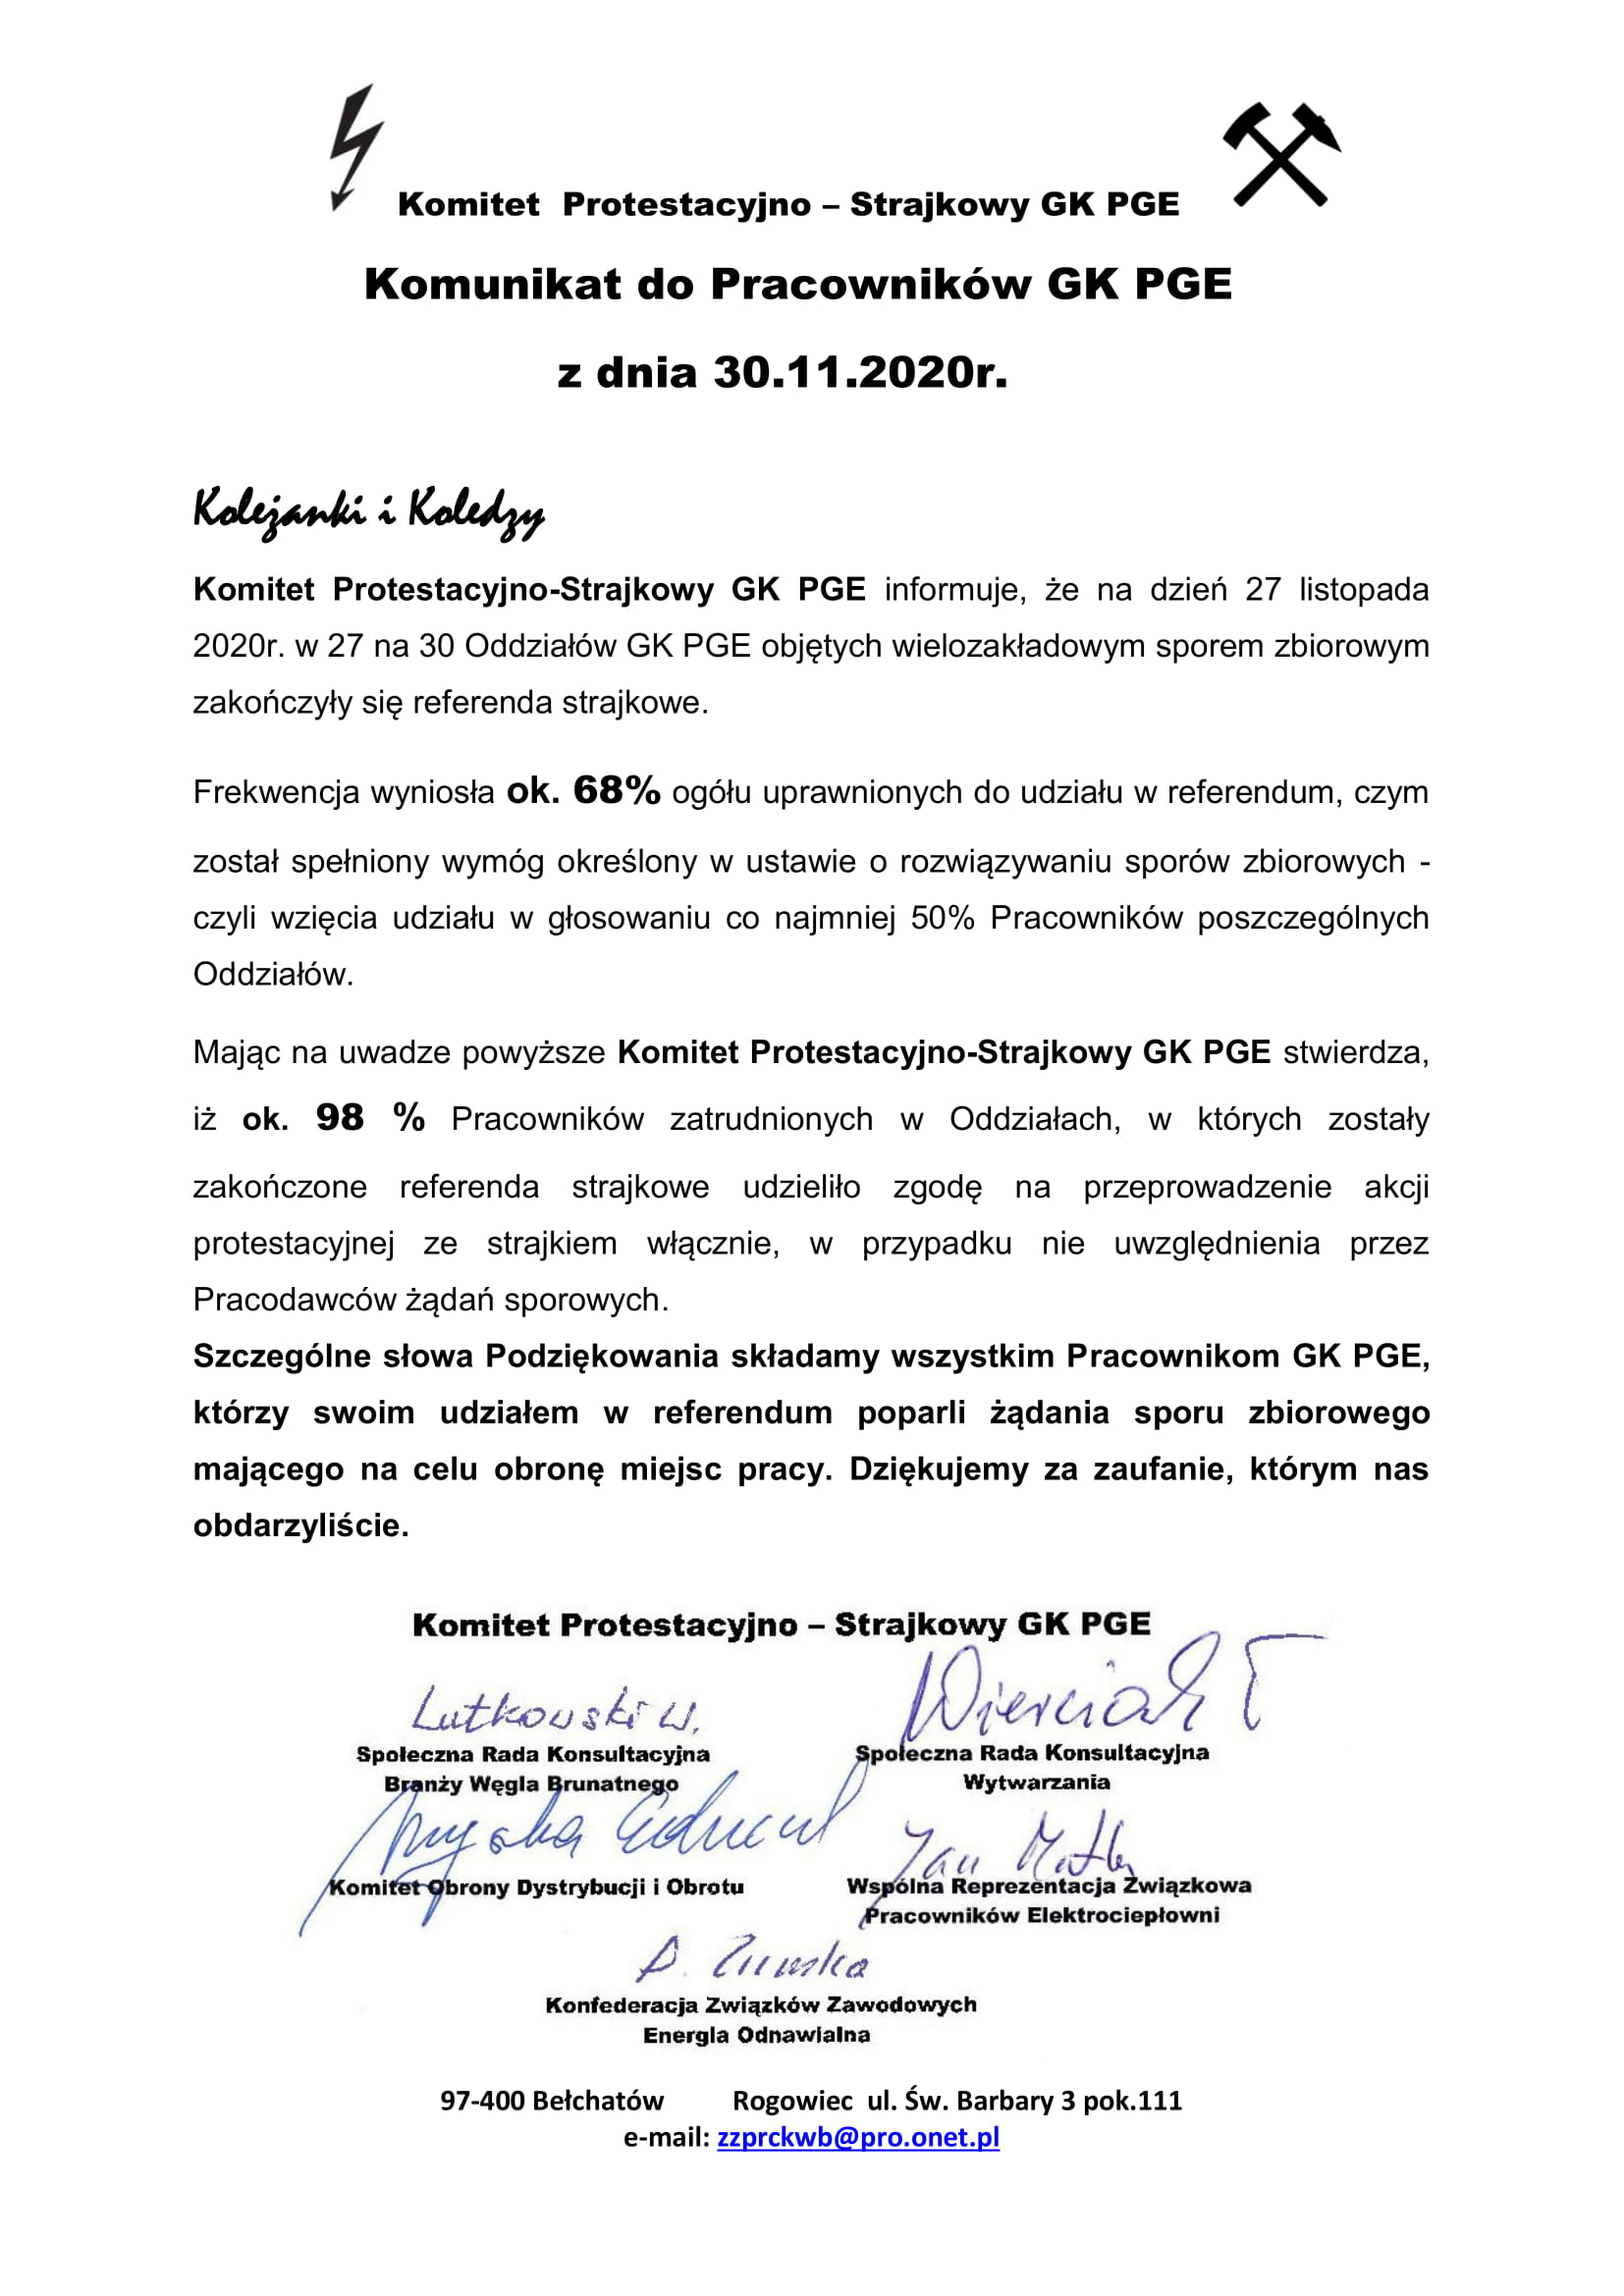 KP S GK PGE Komunikat 29.11.2020r. 1